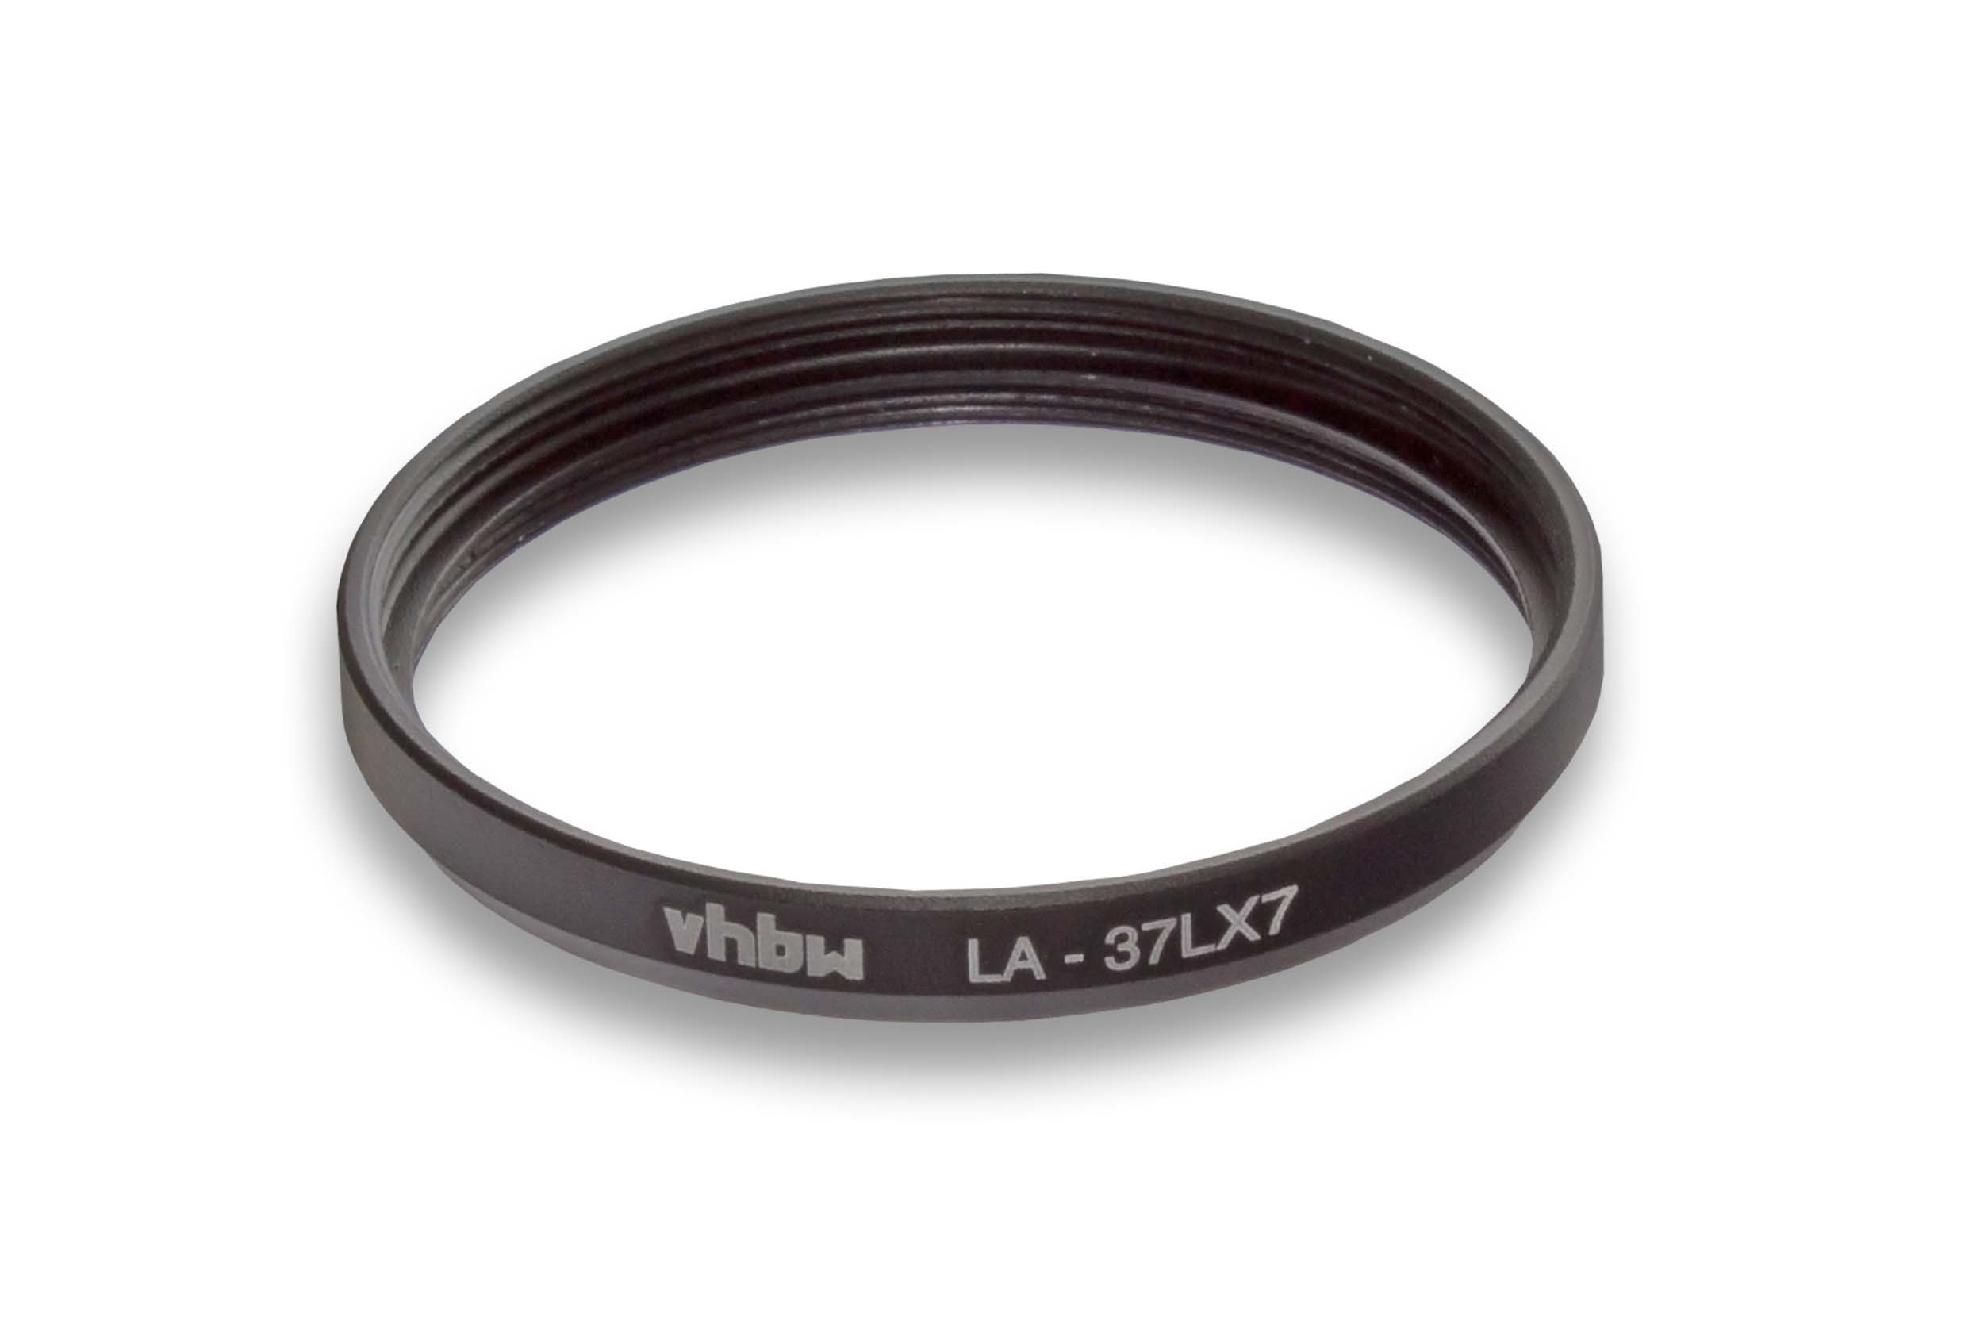 Adaptateur de filtre en métal vhbw 37mm pour votre appareil photo Leica D-Lux 6, Panasonic Lumix DMC-LX7, filtre DMW-LND37, DMW-LPLA37, DMW-LCH37.